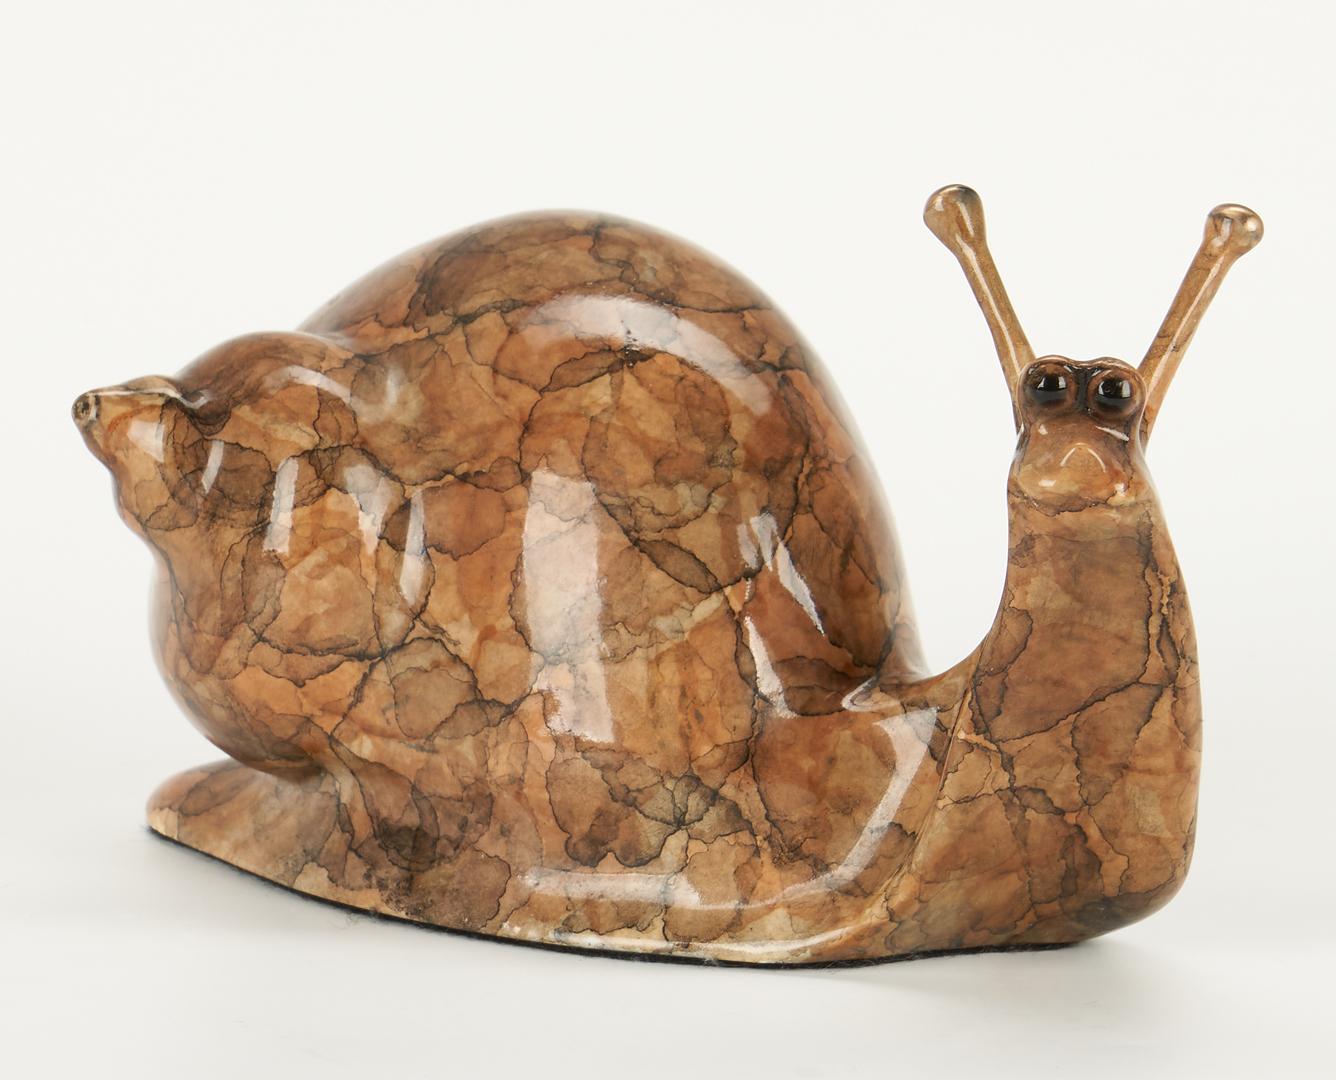 2 Robert Deurloo Bronze Sculptures, Bison and Snail - Image 9 of 16